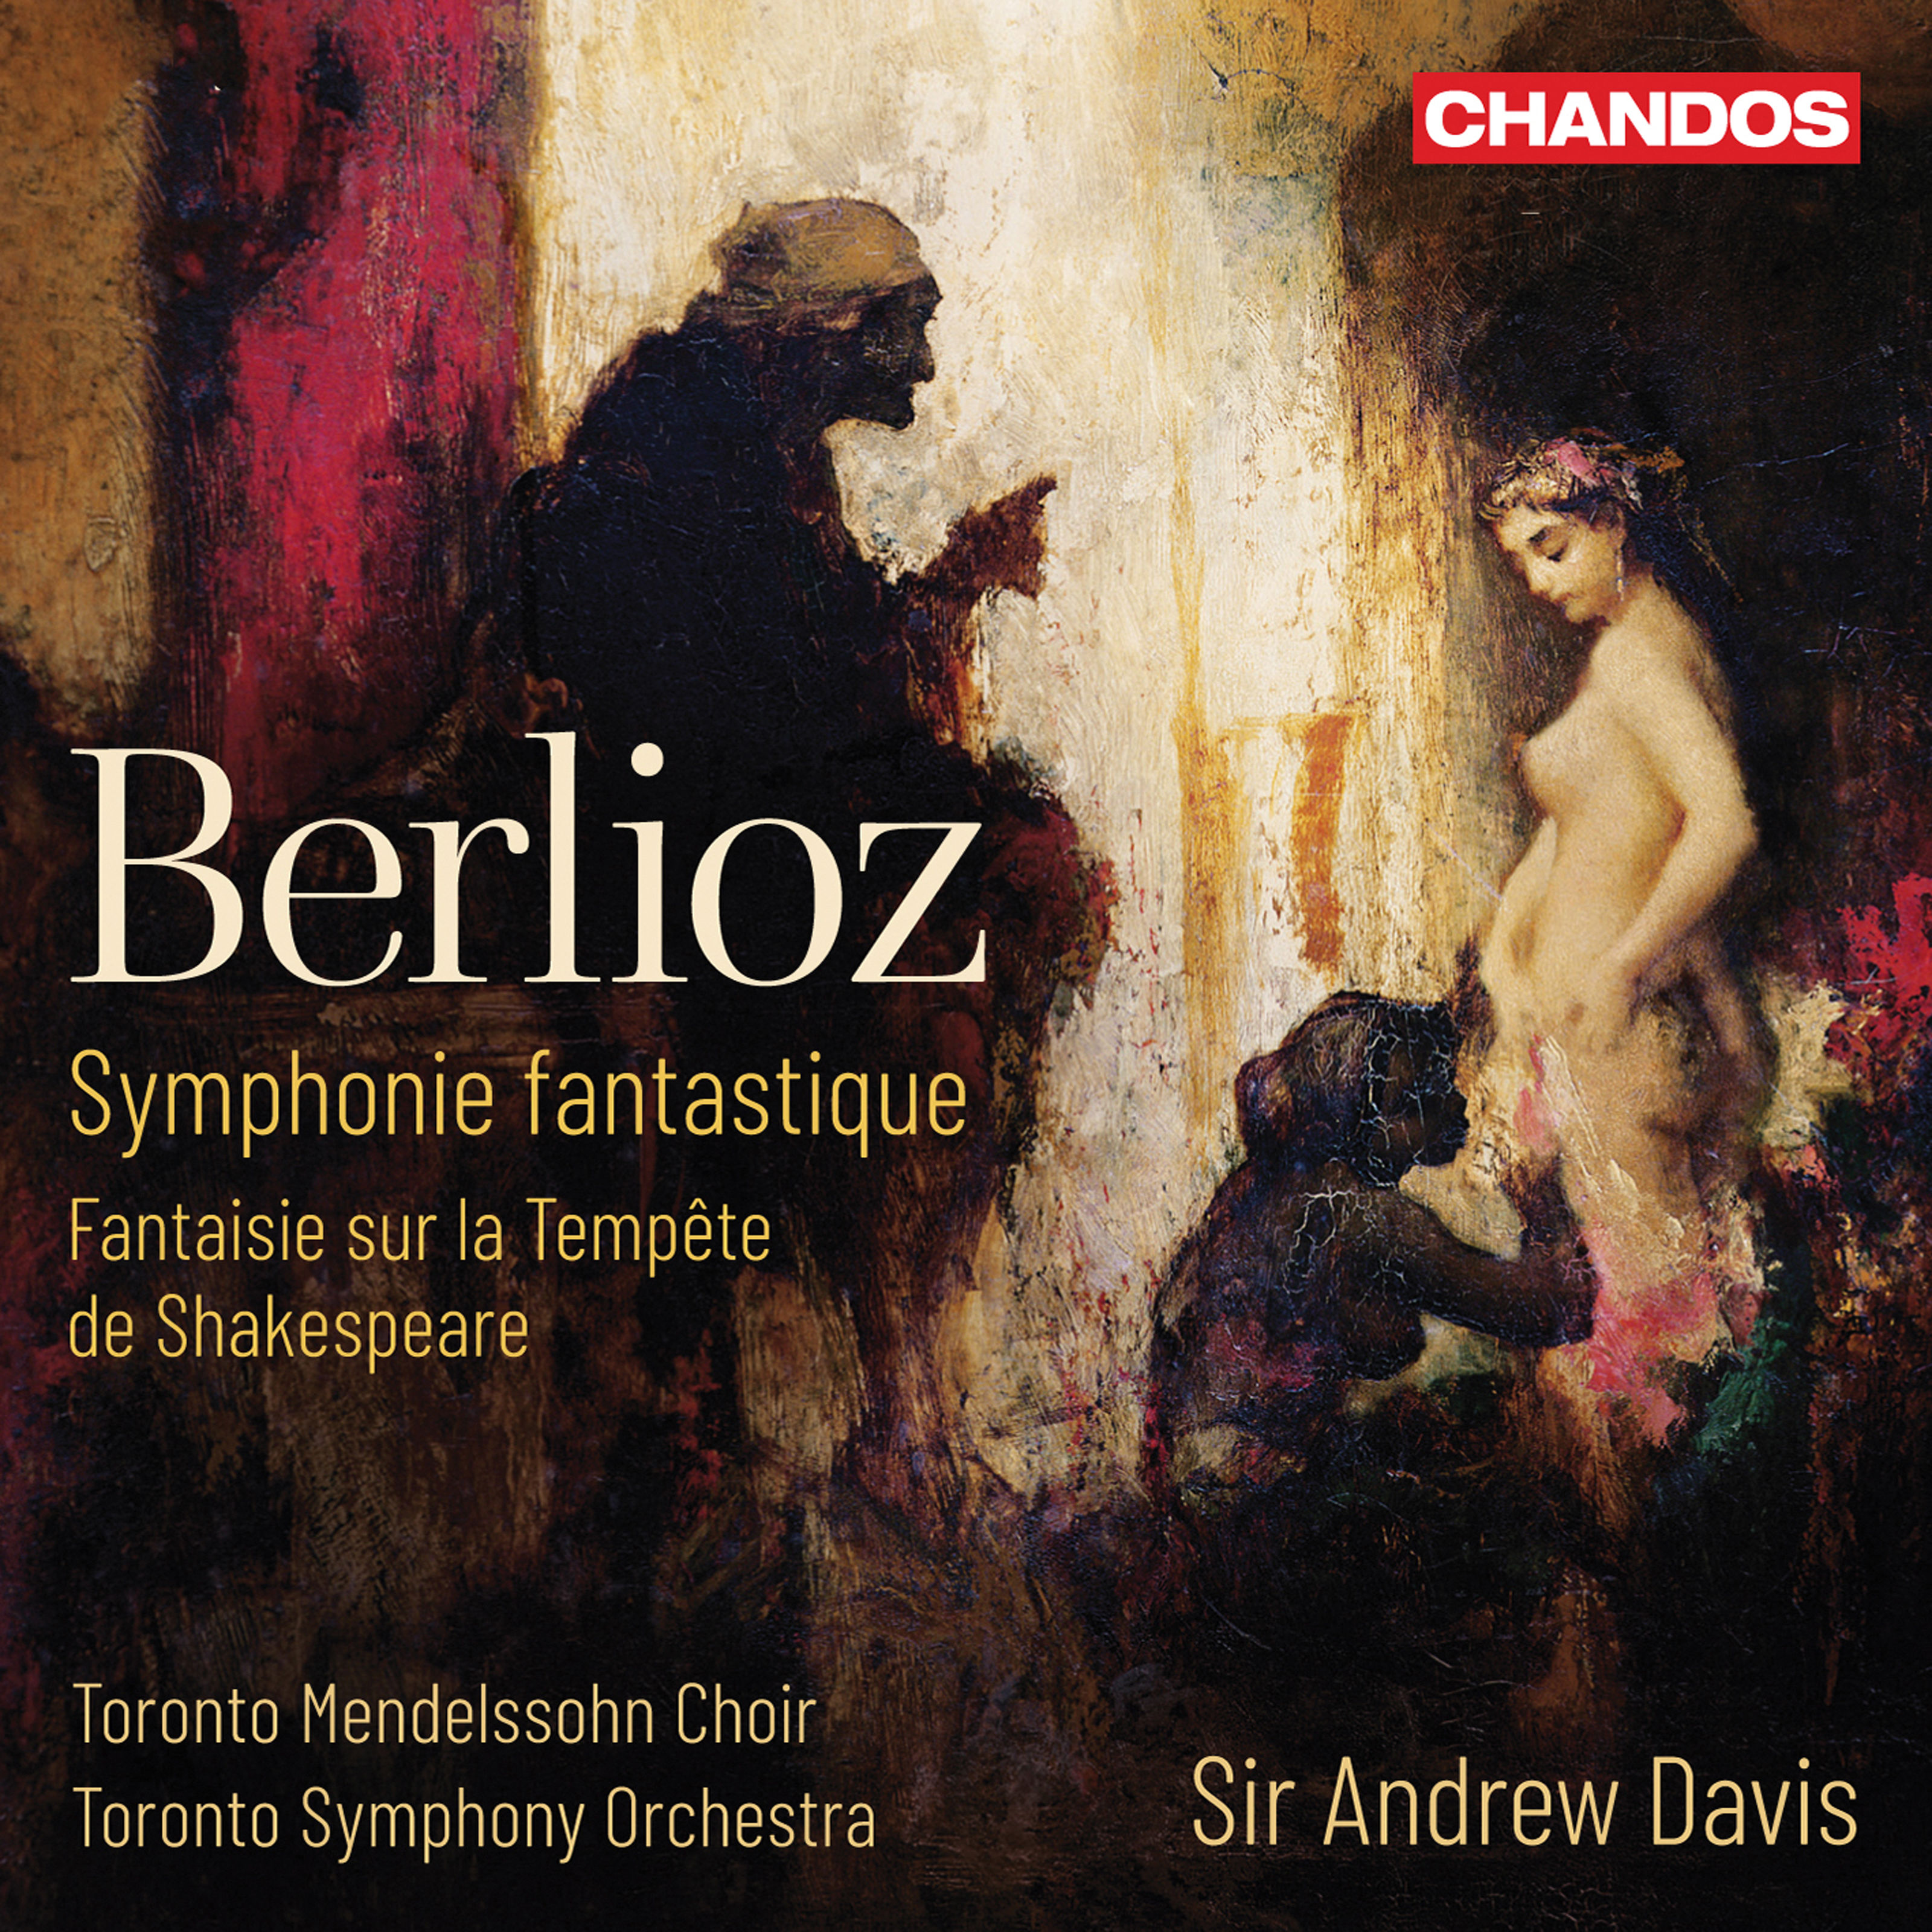 Sir Andrew Davis - Berlioz: Symphony fantastique & Fantaisie dramatique sur la tempete (2019) [FLAC 24bit/96kHz]